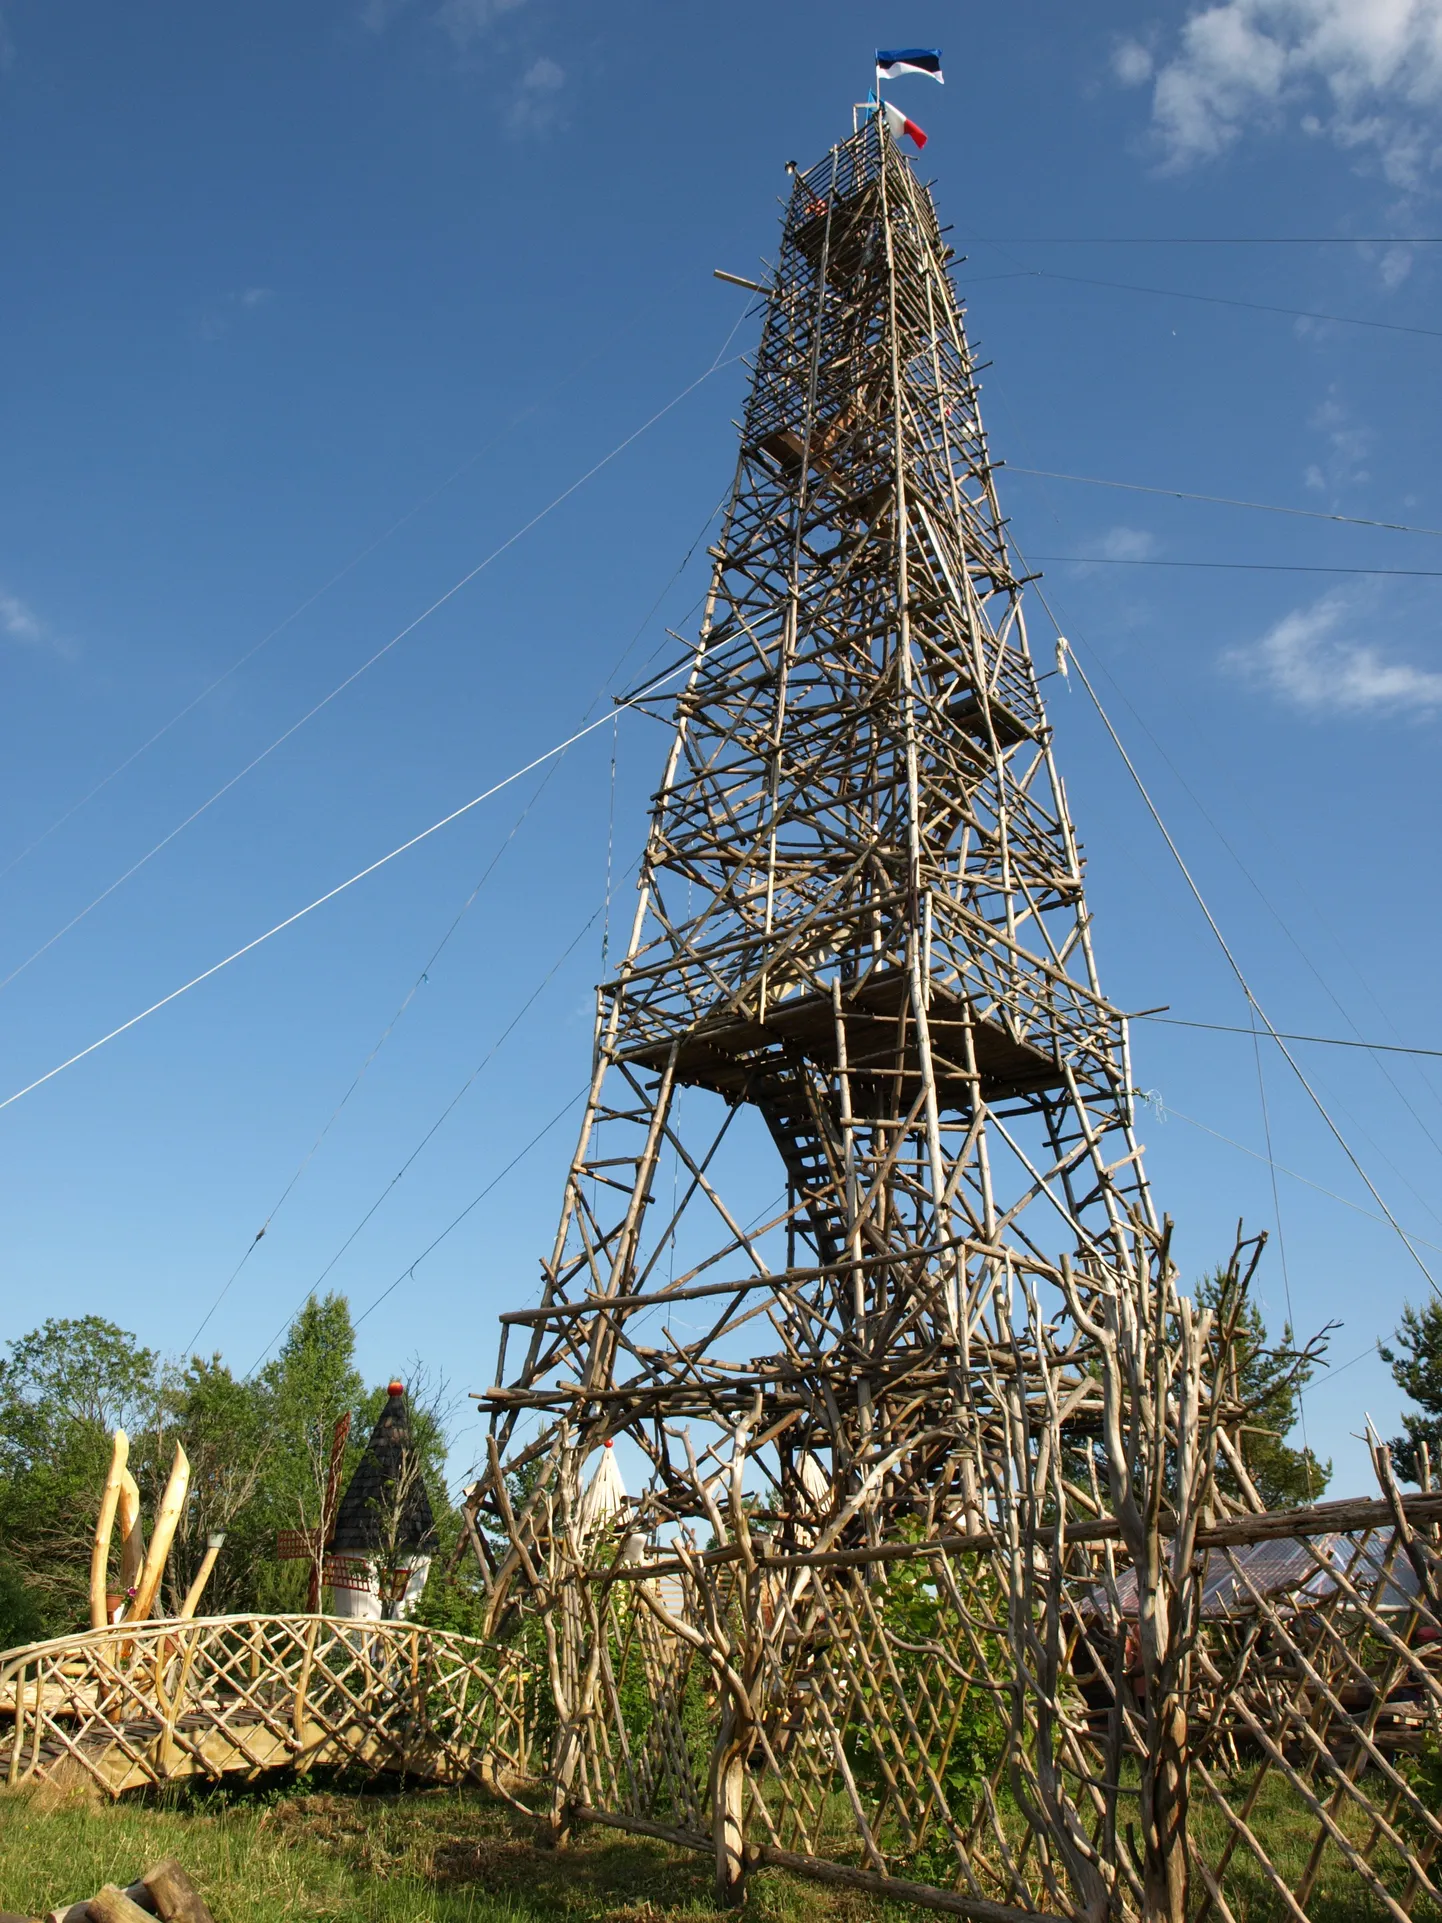 Копия Эйфелевой башни, построенная Алликсоо весной 2008 года.